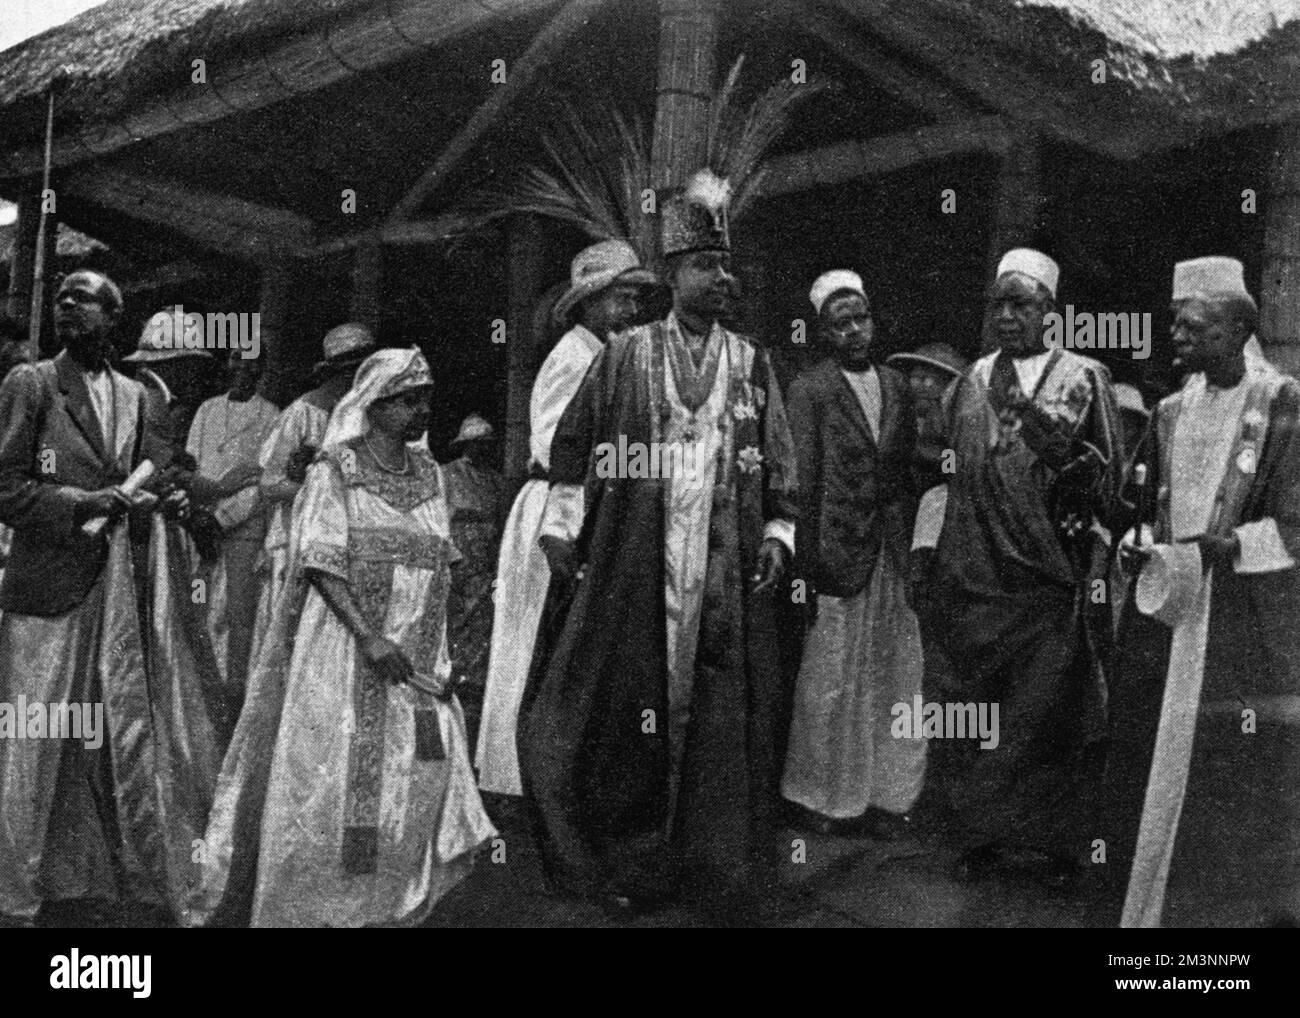 König Daubi Chwa, der Kabaka von Buganda mit seiner Gemahlin, Königin Irene und seinen Ministern in Mengo.während des Besuchs des Herzogs und der Herzogin von York in Uganda wurde König Daubi Chwa vom Herzog mit dem K.C.M.G. investiert. Datum: 1925 Stockfoto